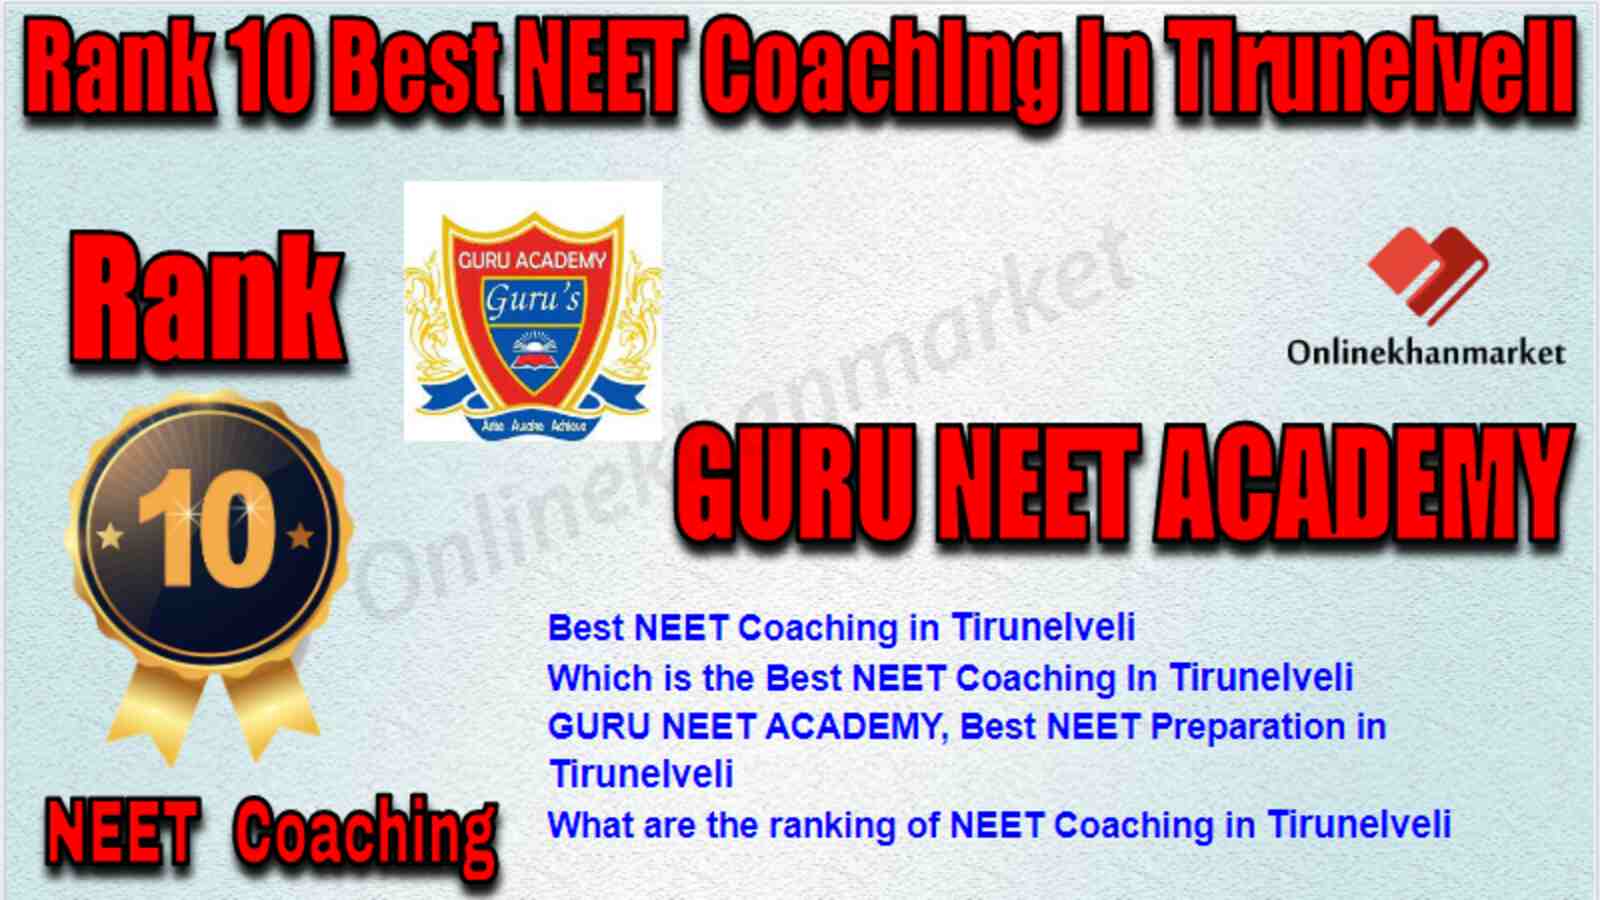 Rank 10 Best NEET Coaching in Tirunelveli